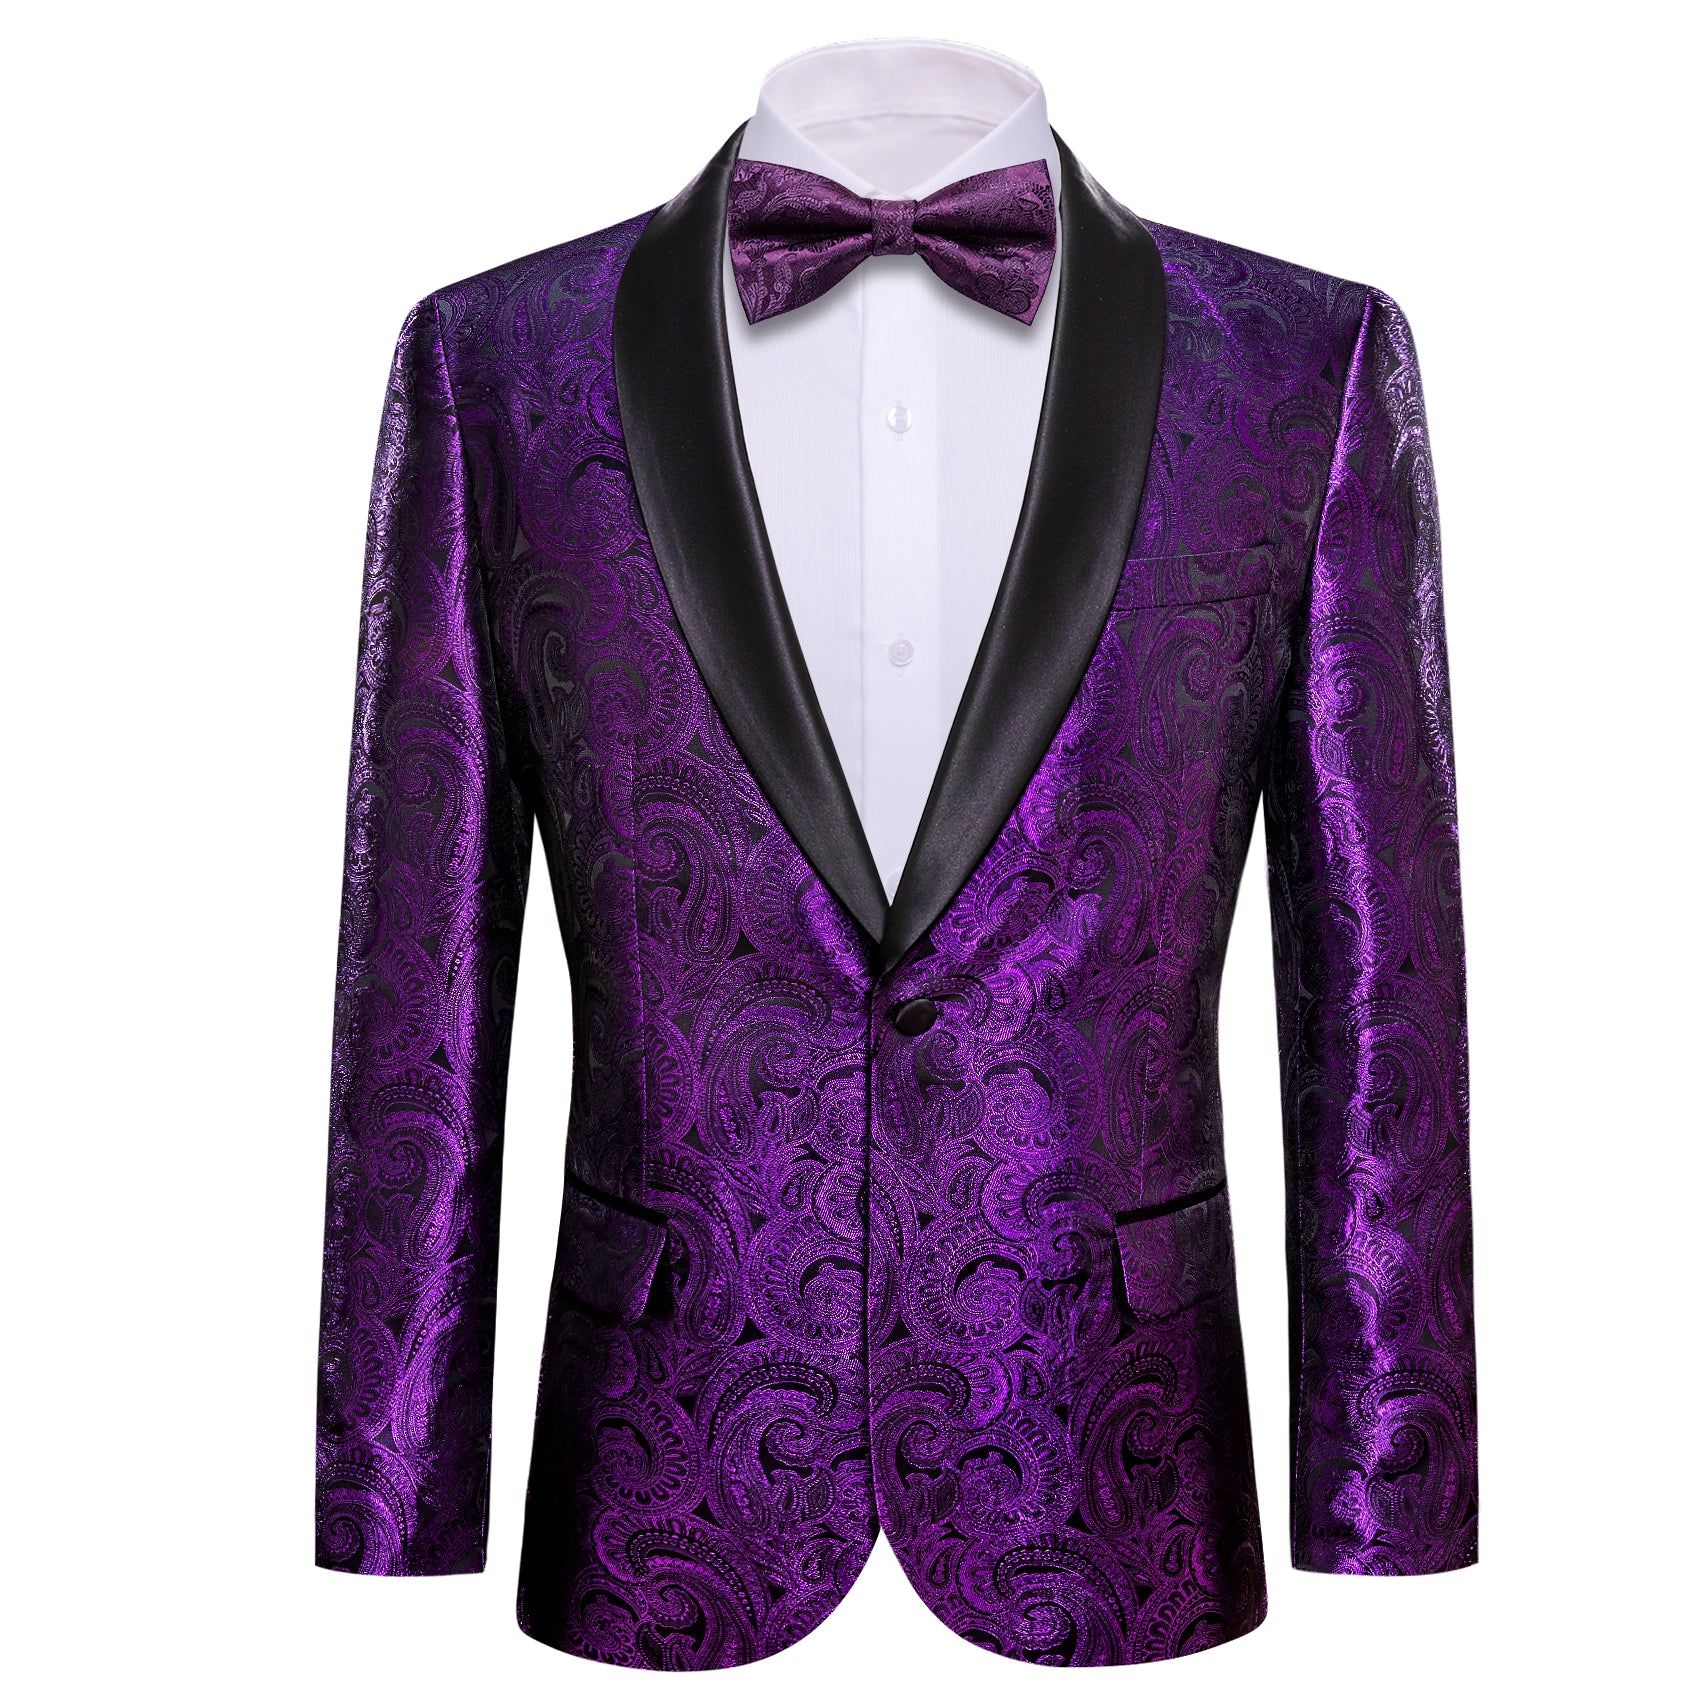 Men's Dress Party Purple Floral Suit Jacket Slim One Button Stylish Blazer